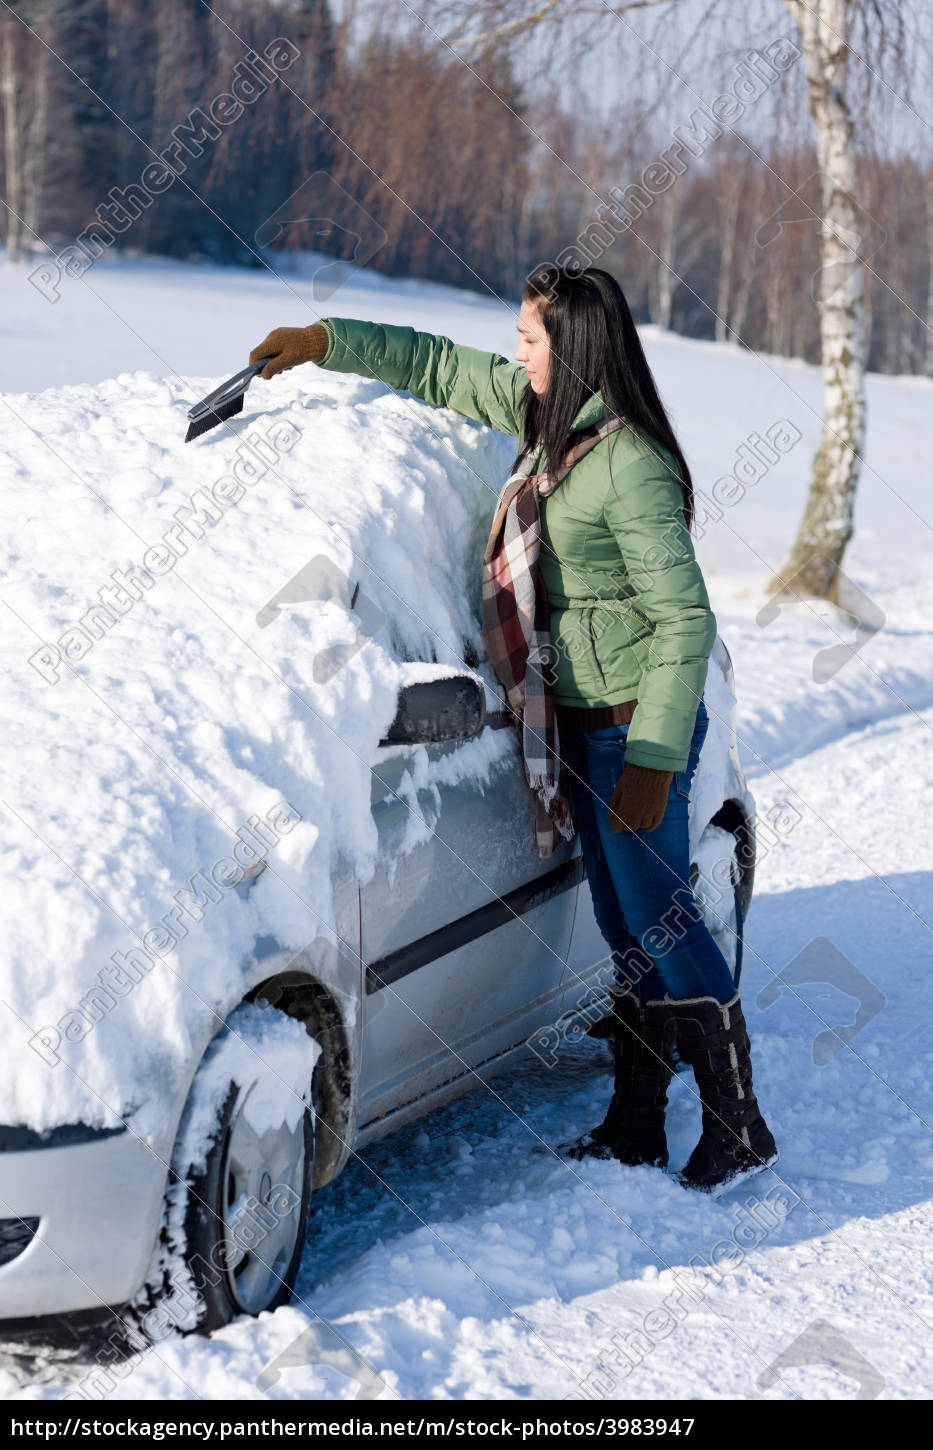 winterauto - frau schnee von windschutzscheibe - Lizenzfreies Bild